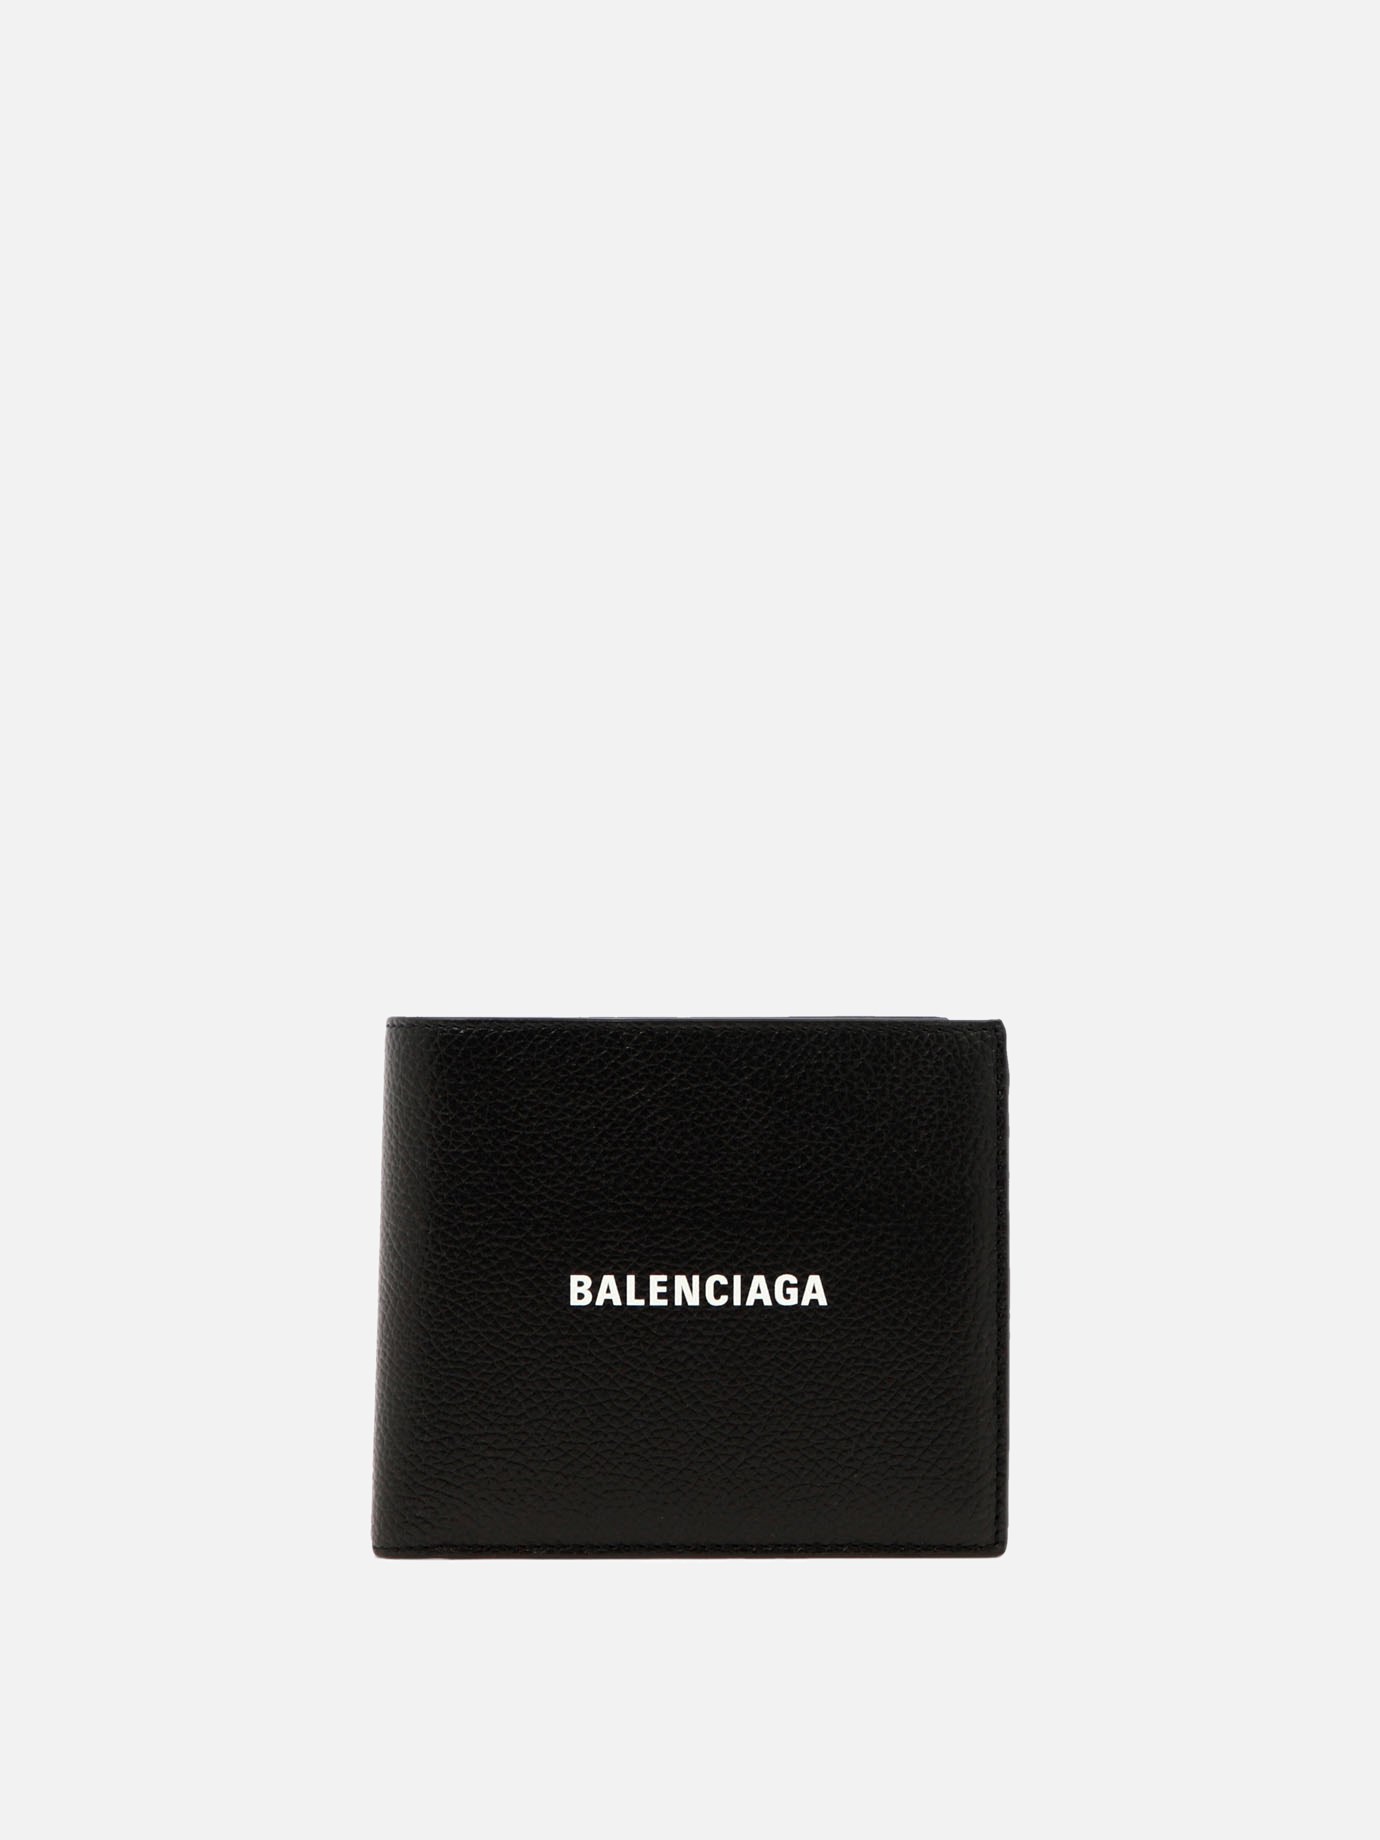  Cash Square Folded Coin  walletby Balenciaga - 3